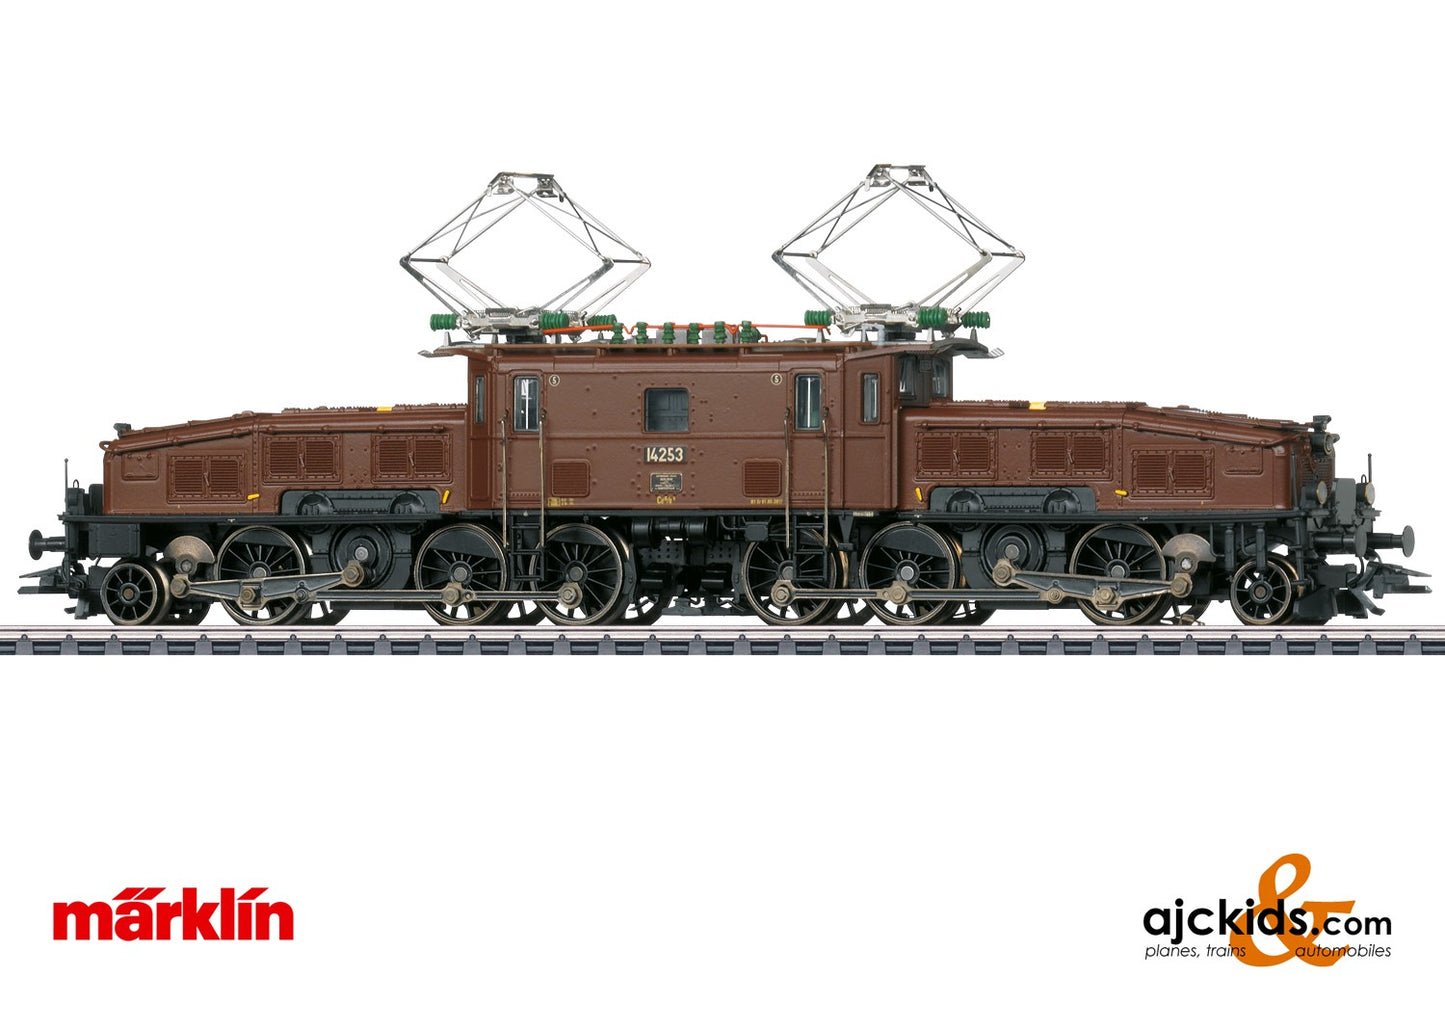 Marklin 39595 - Class Ce 6/8 II "Crocodile" Electric Locomotive, EAN 4001883395951 at Ajckids.com